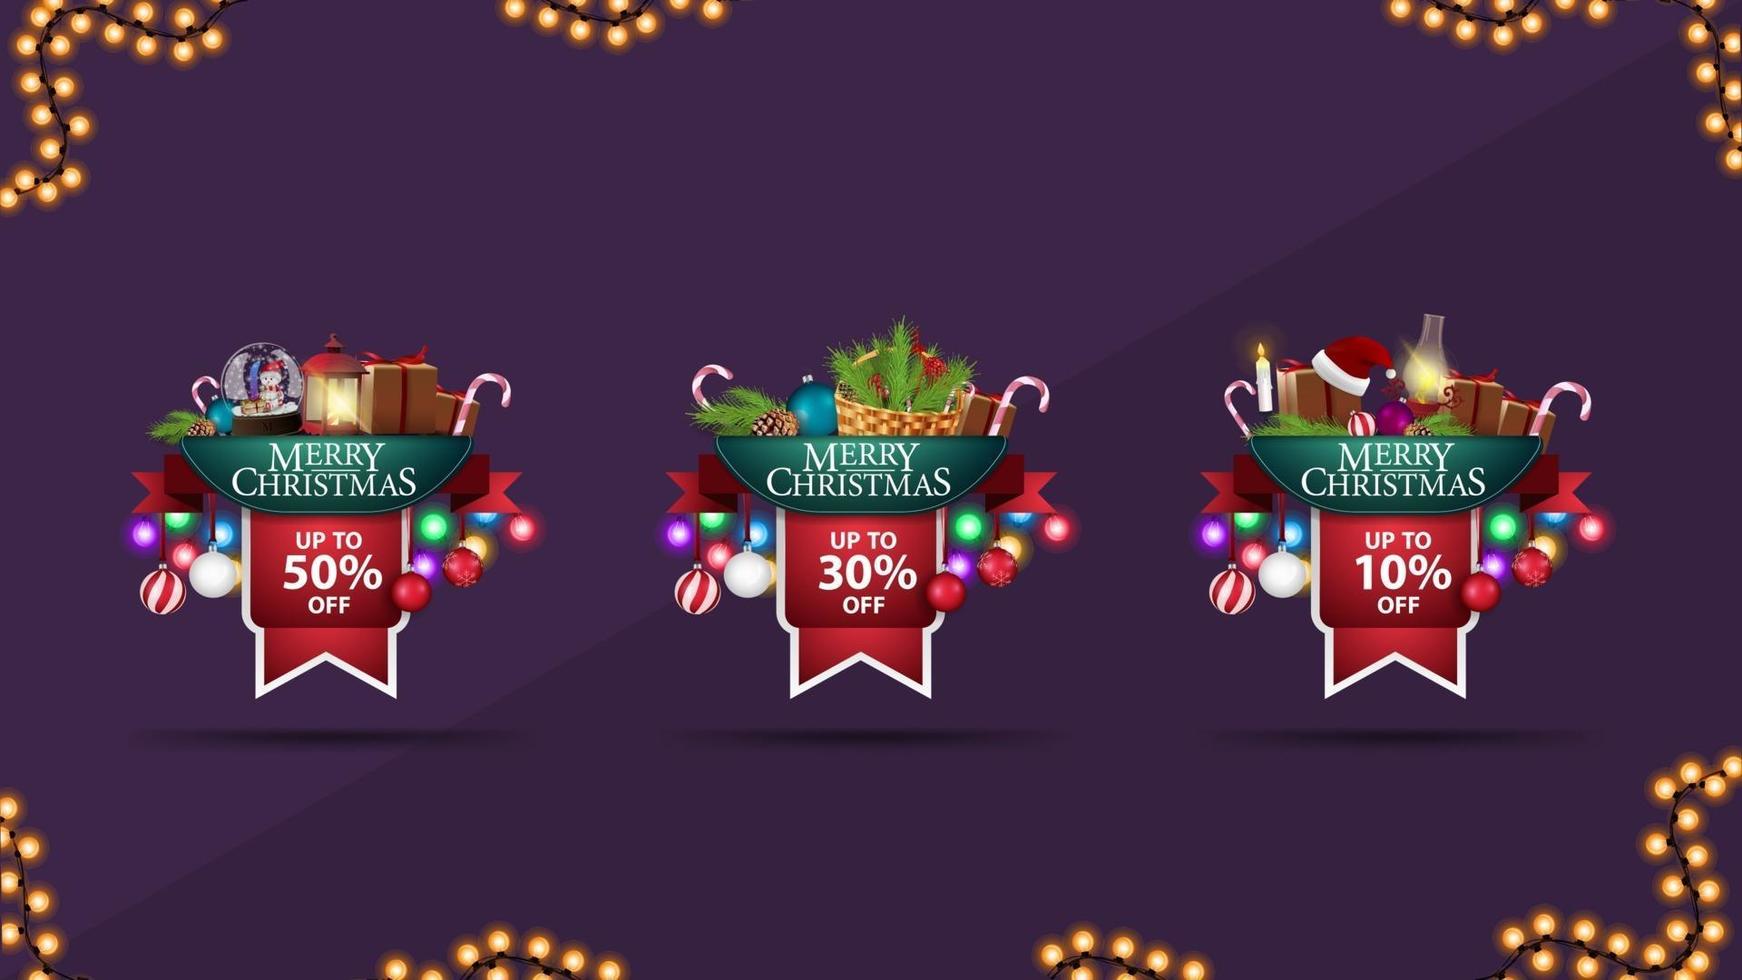 verzameling kerst 3d volumetrische stickers in de vorm van linten versierd met cadeautjes, slingers en kerstelementen. vector